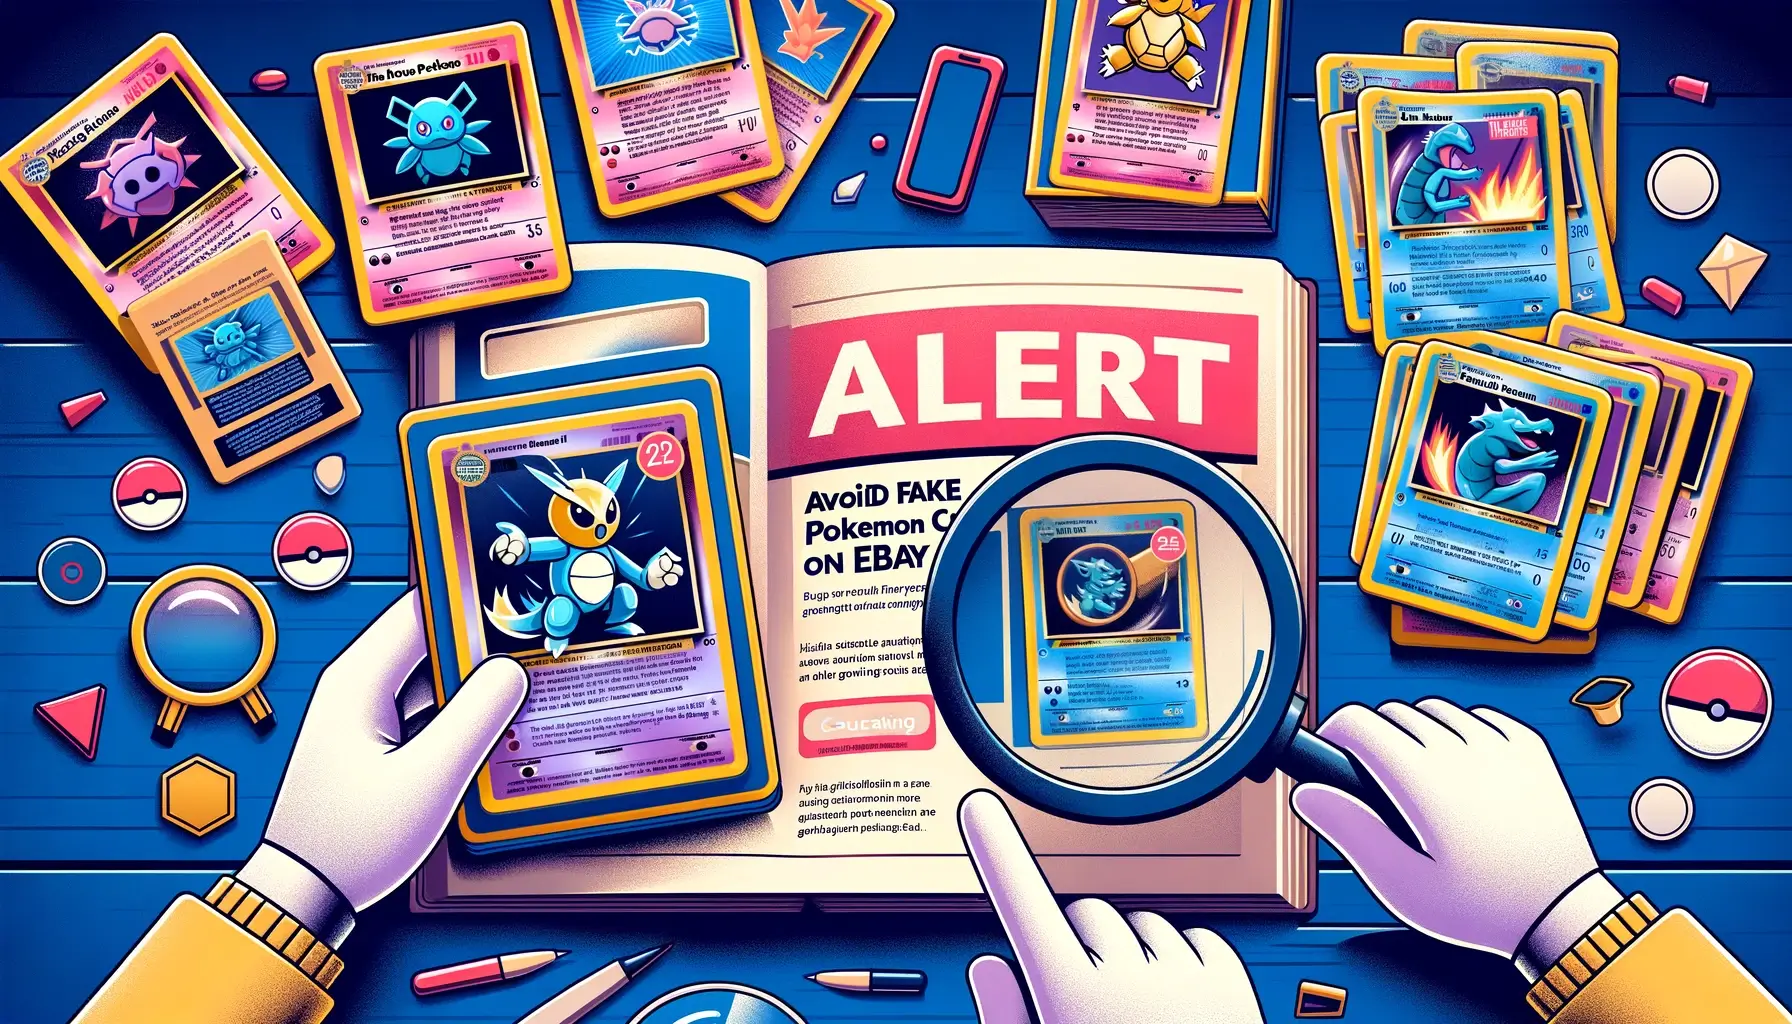 Avoid Fake Pokemon Cards on eBay title image